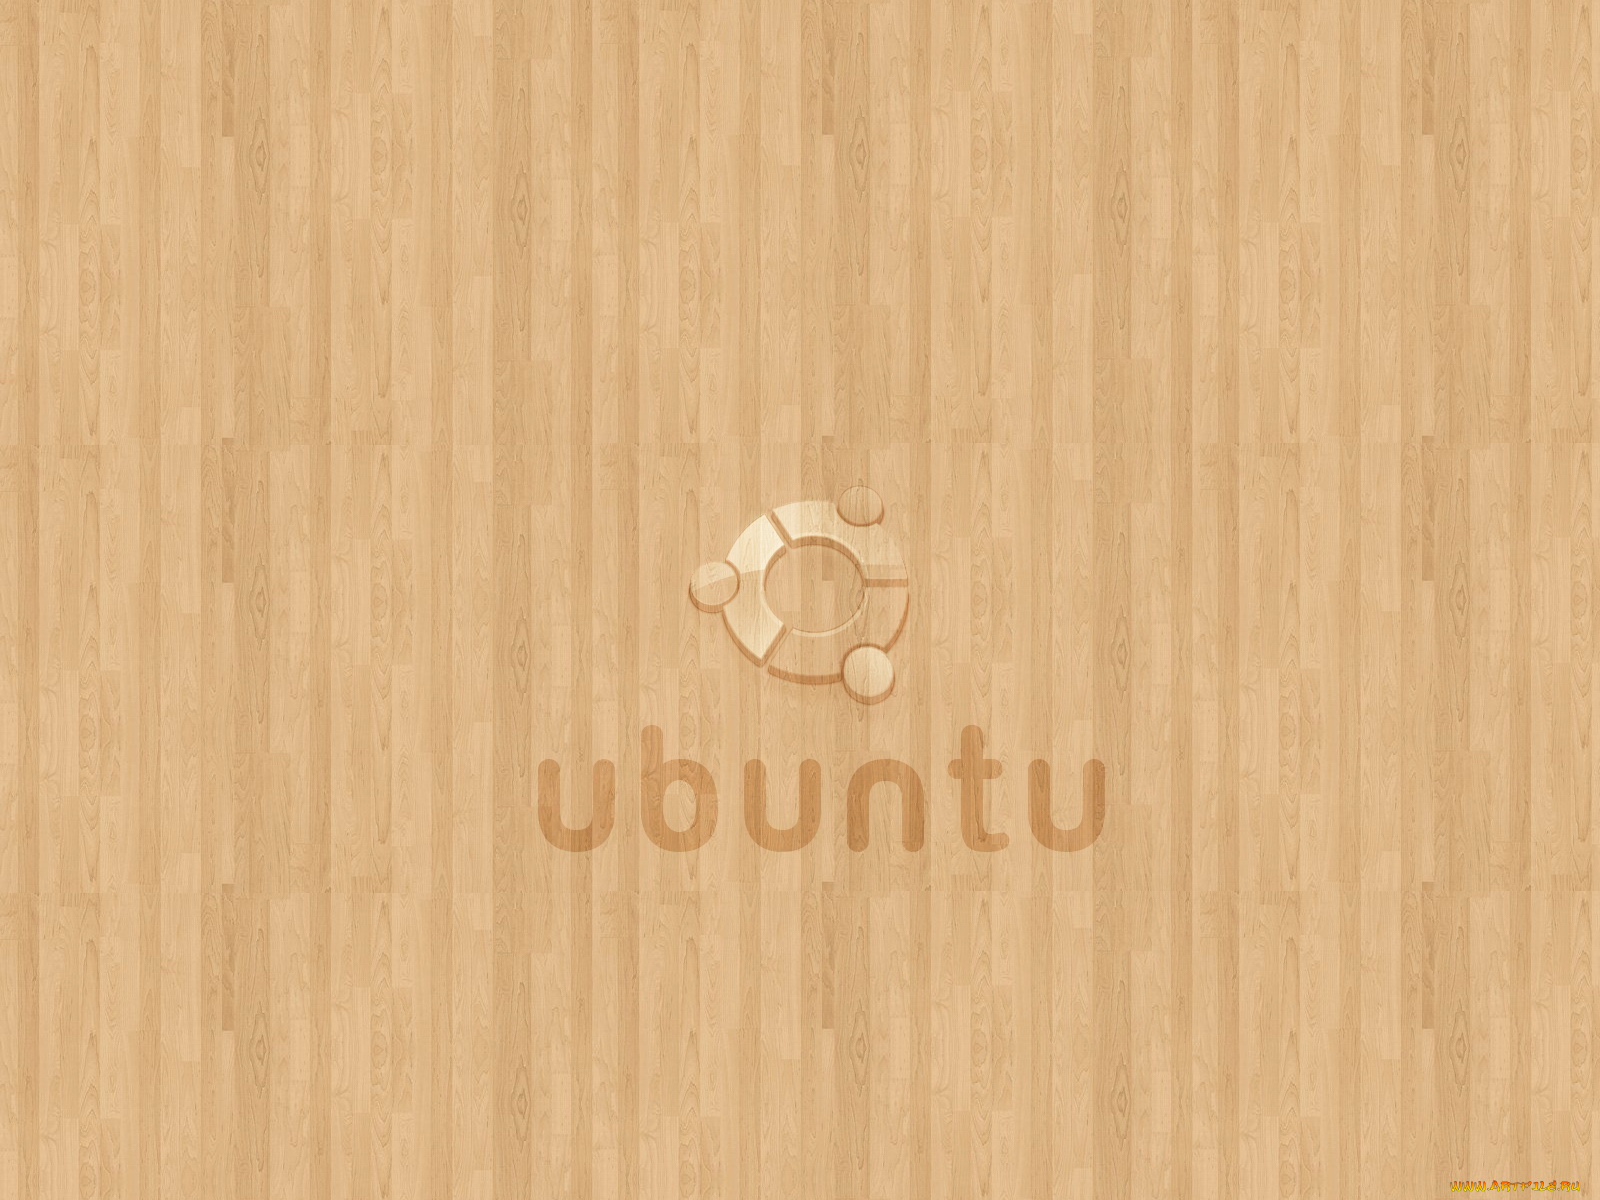 компьютеры, ubuntu, linux, доски, фон, коричневый